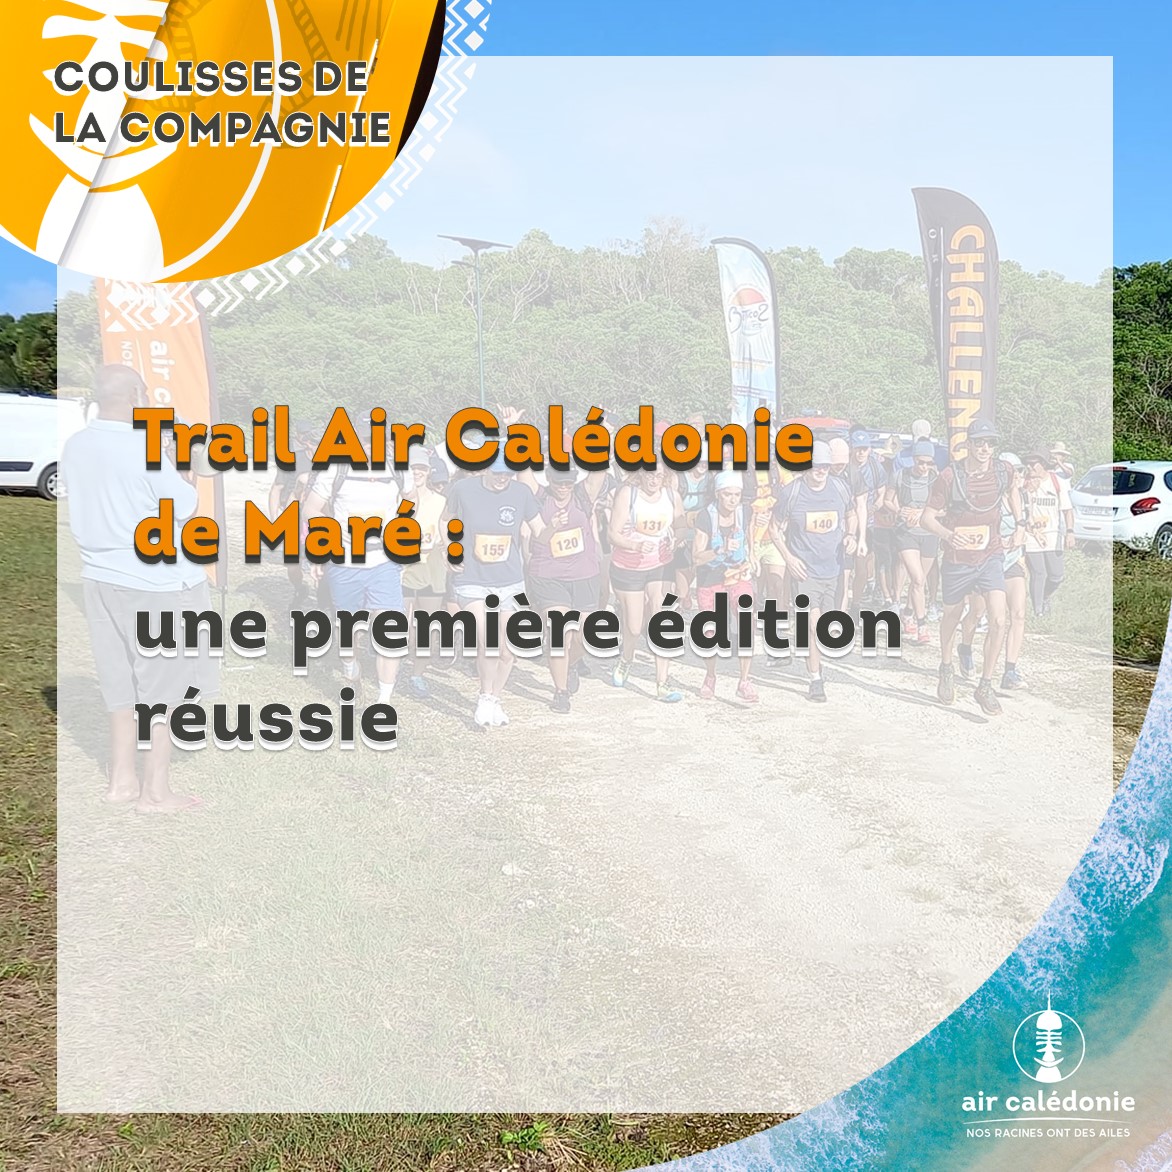 La première édition du Trail Air Calédonie de Maré, c'était le 10 décembre dernier. Plus d'une centaine de participants étaient présents pour participer à la course.